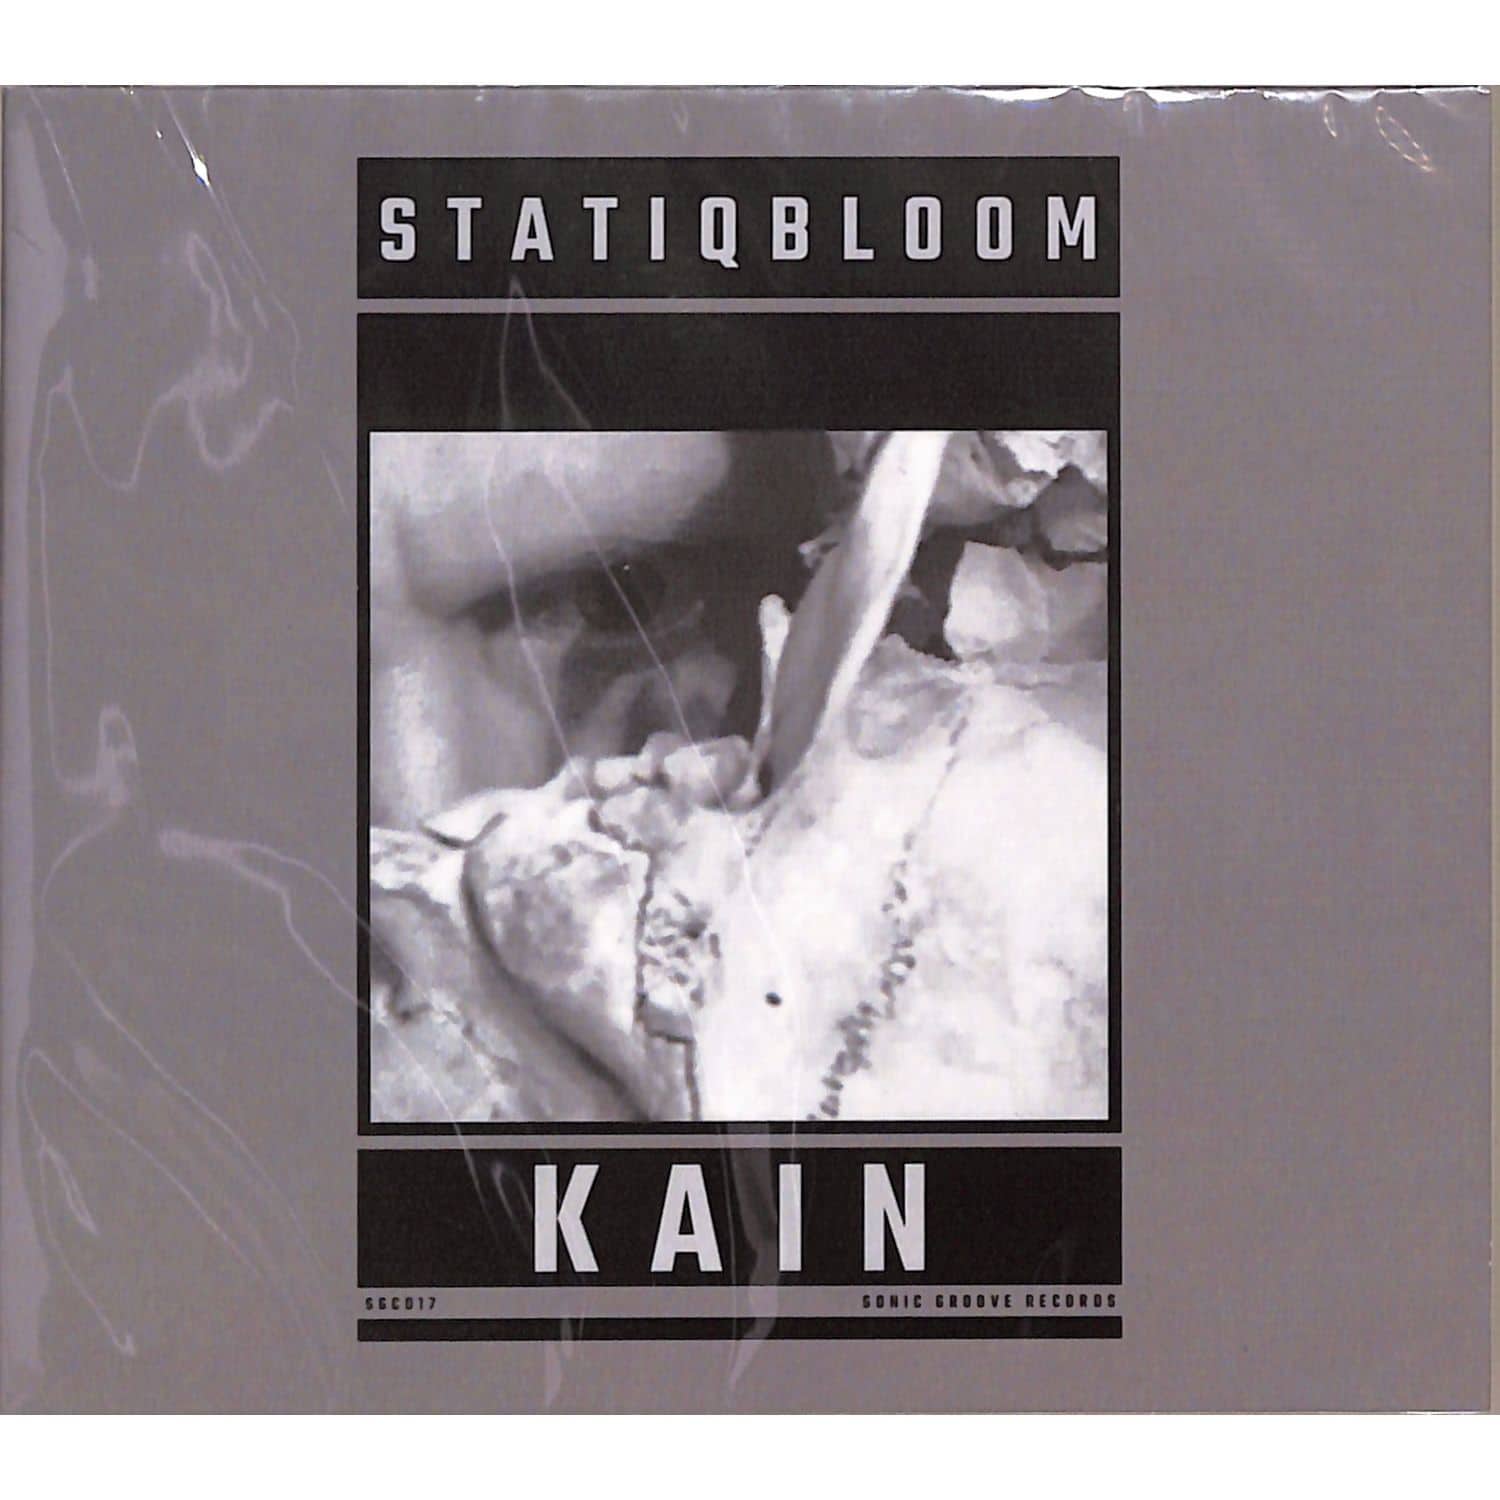 Statiqbloom - KAIN 